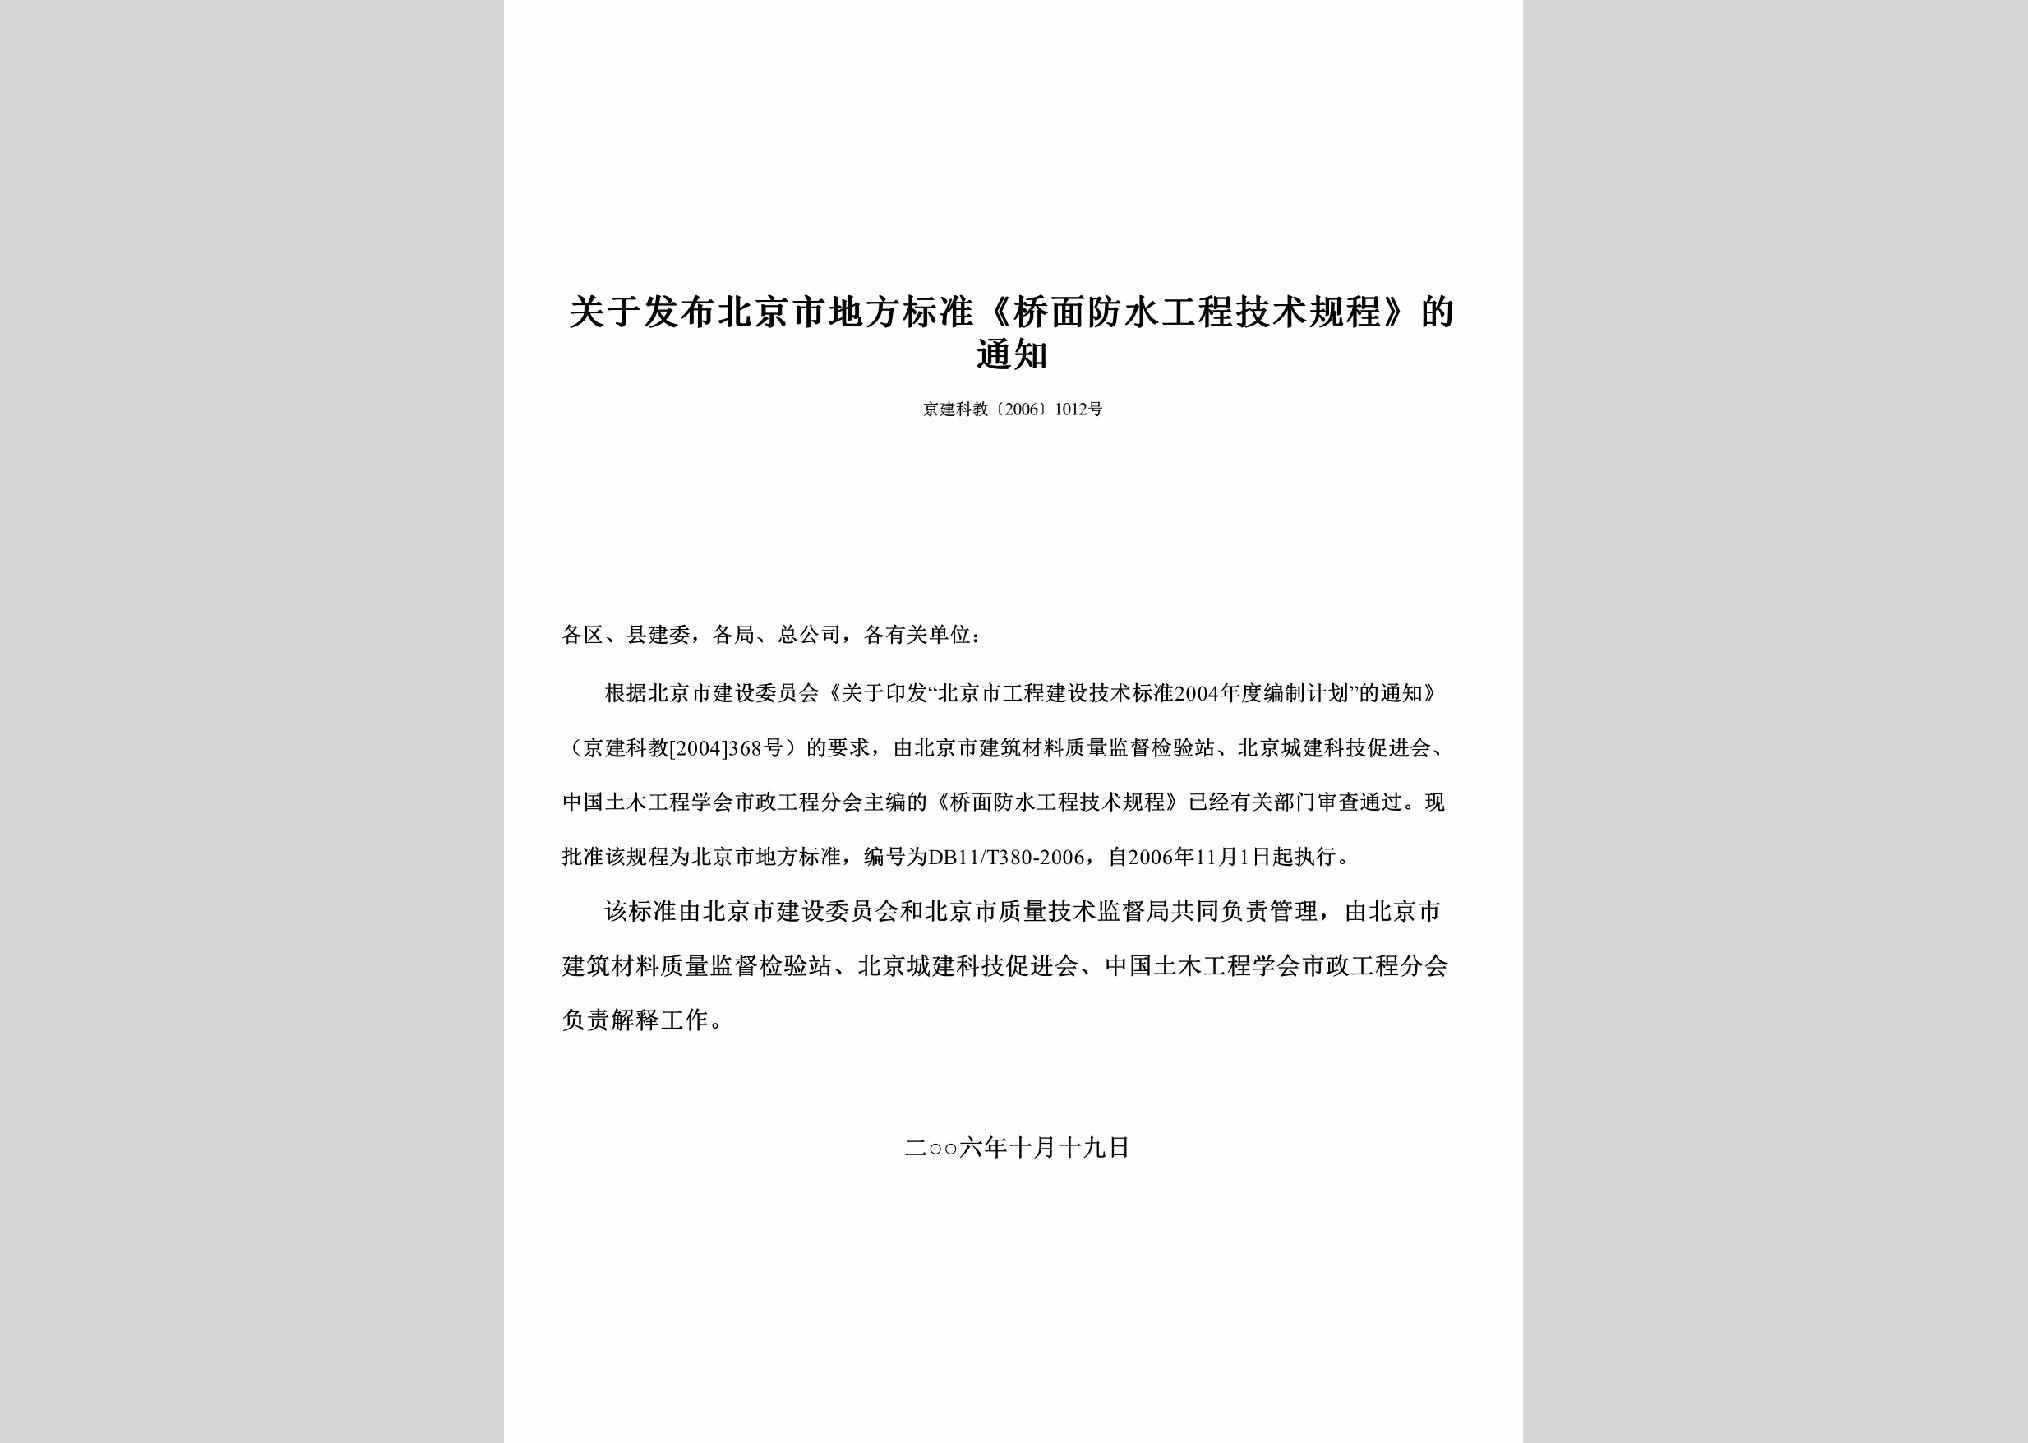 京建科教[2006]1012号：关于发布北京市地方标准《桥面防水工程技术规程》的通知